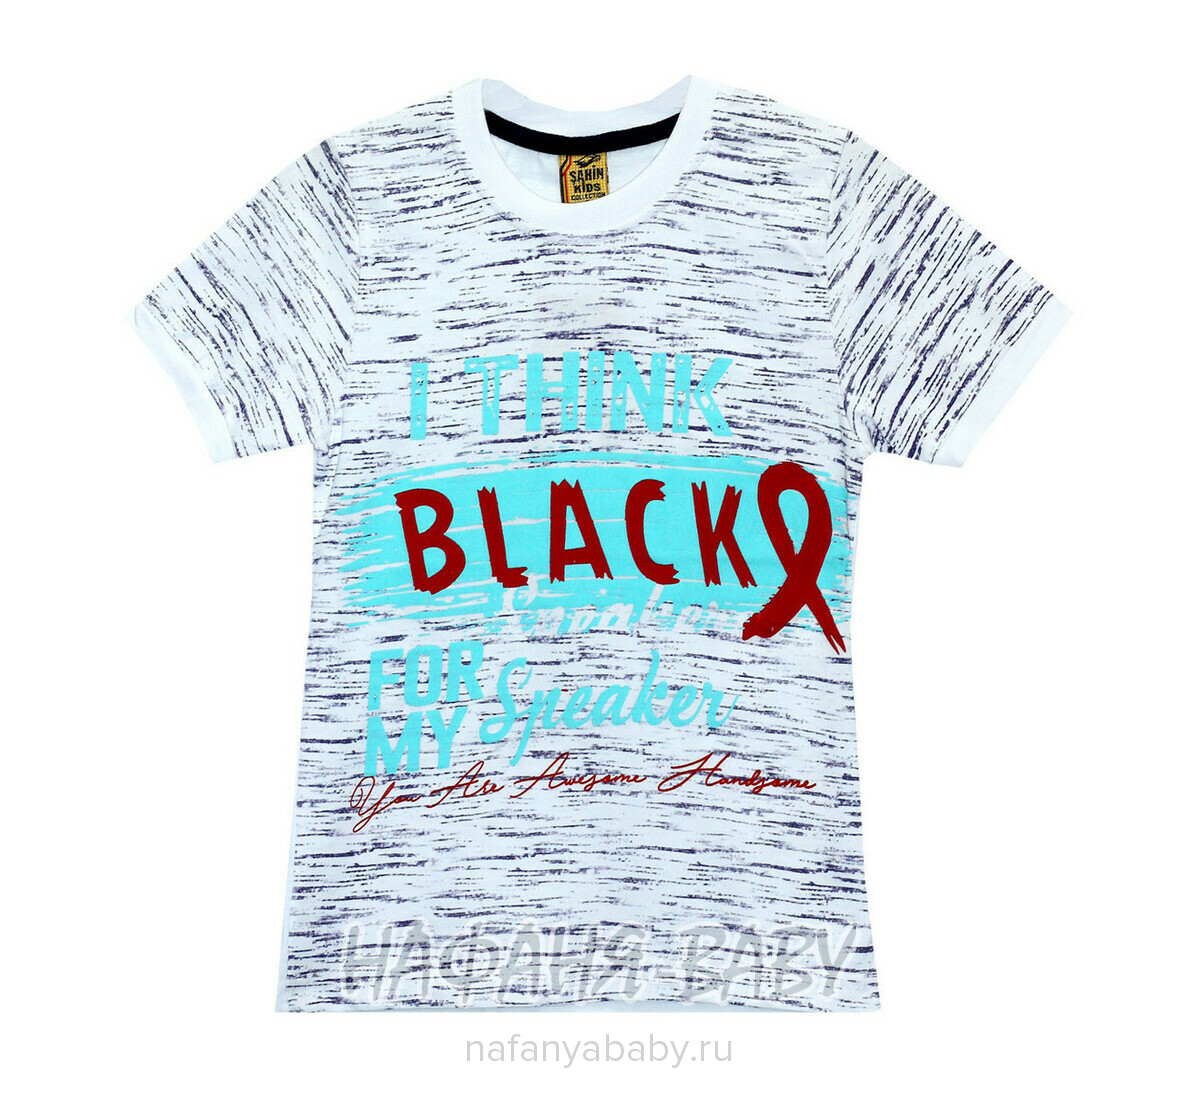 Подростковая футболка SAHIN, купить в интернет магазине Нафаня. арт: 707.